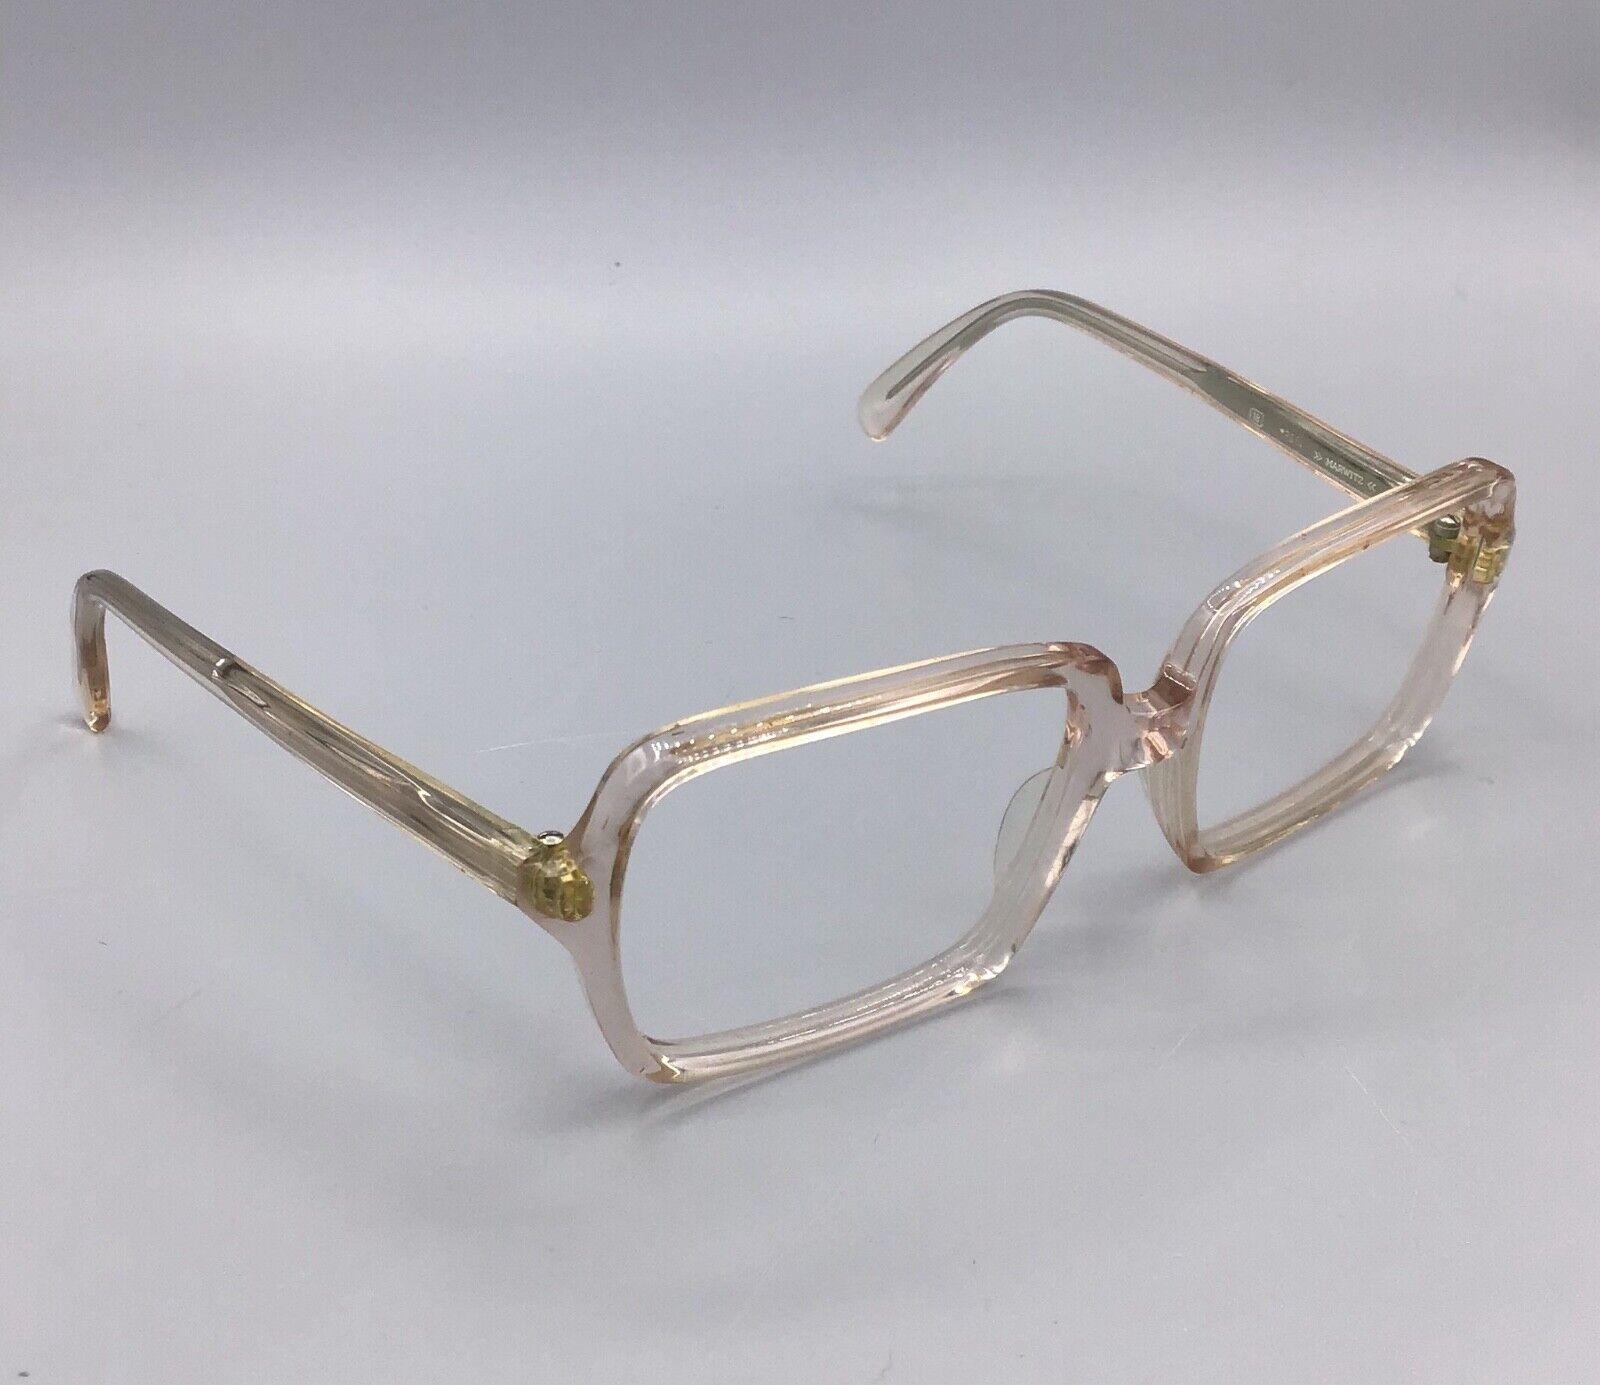 Marwitz occhiale vintage Eyewear frame brillen lunettes RAS54 model